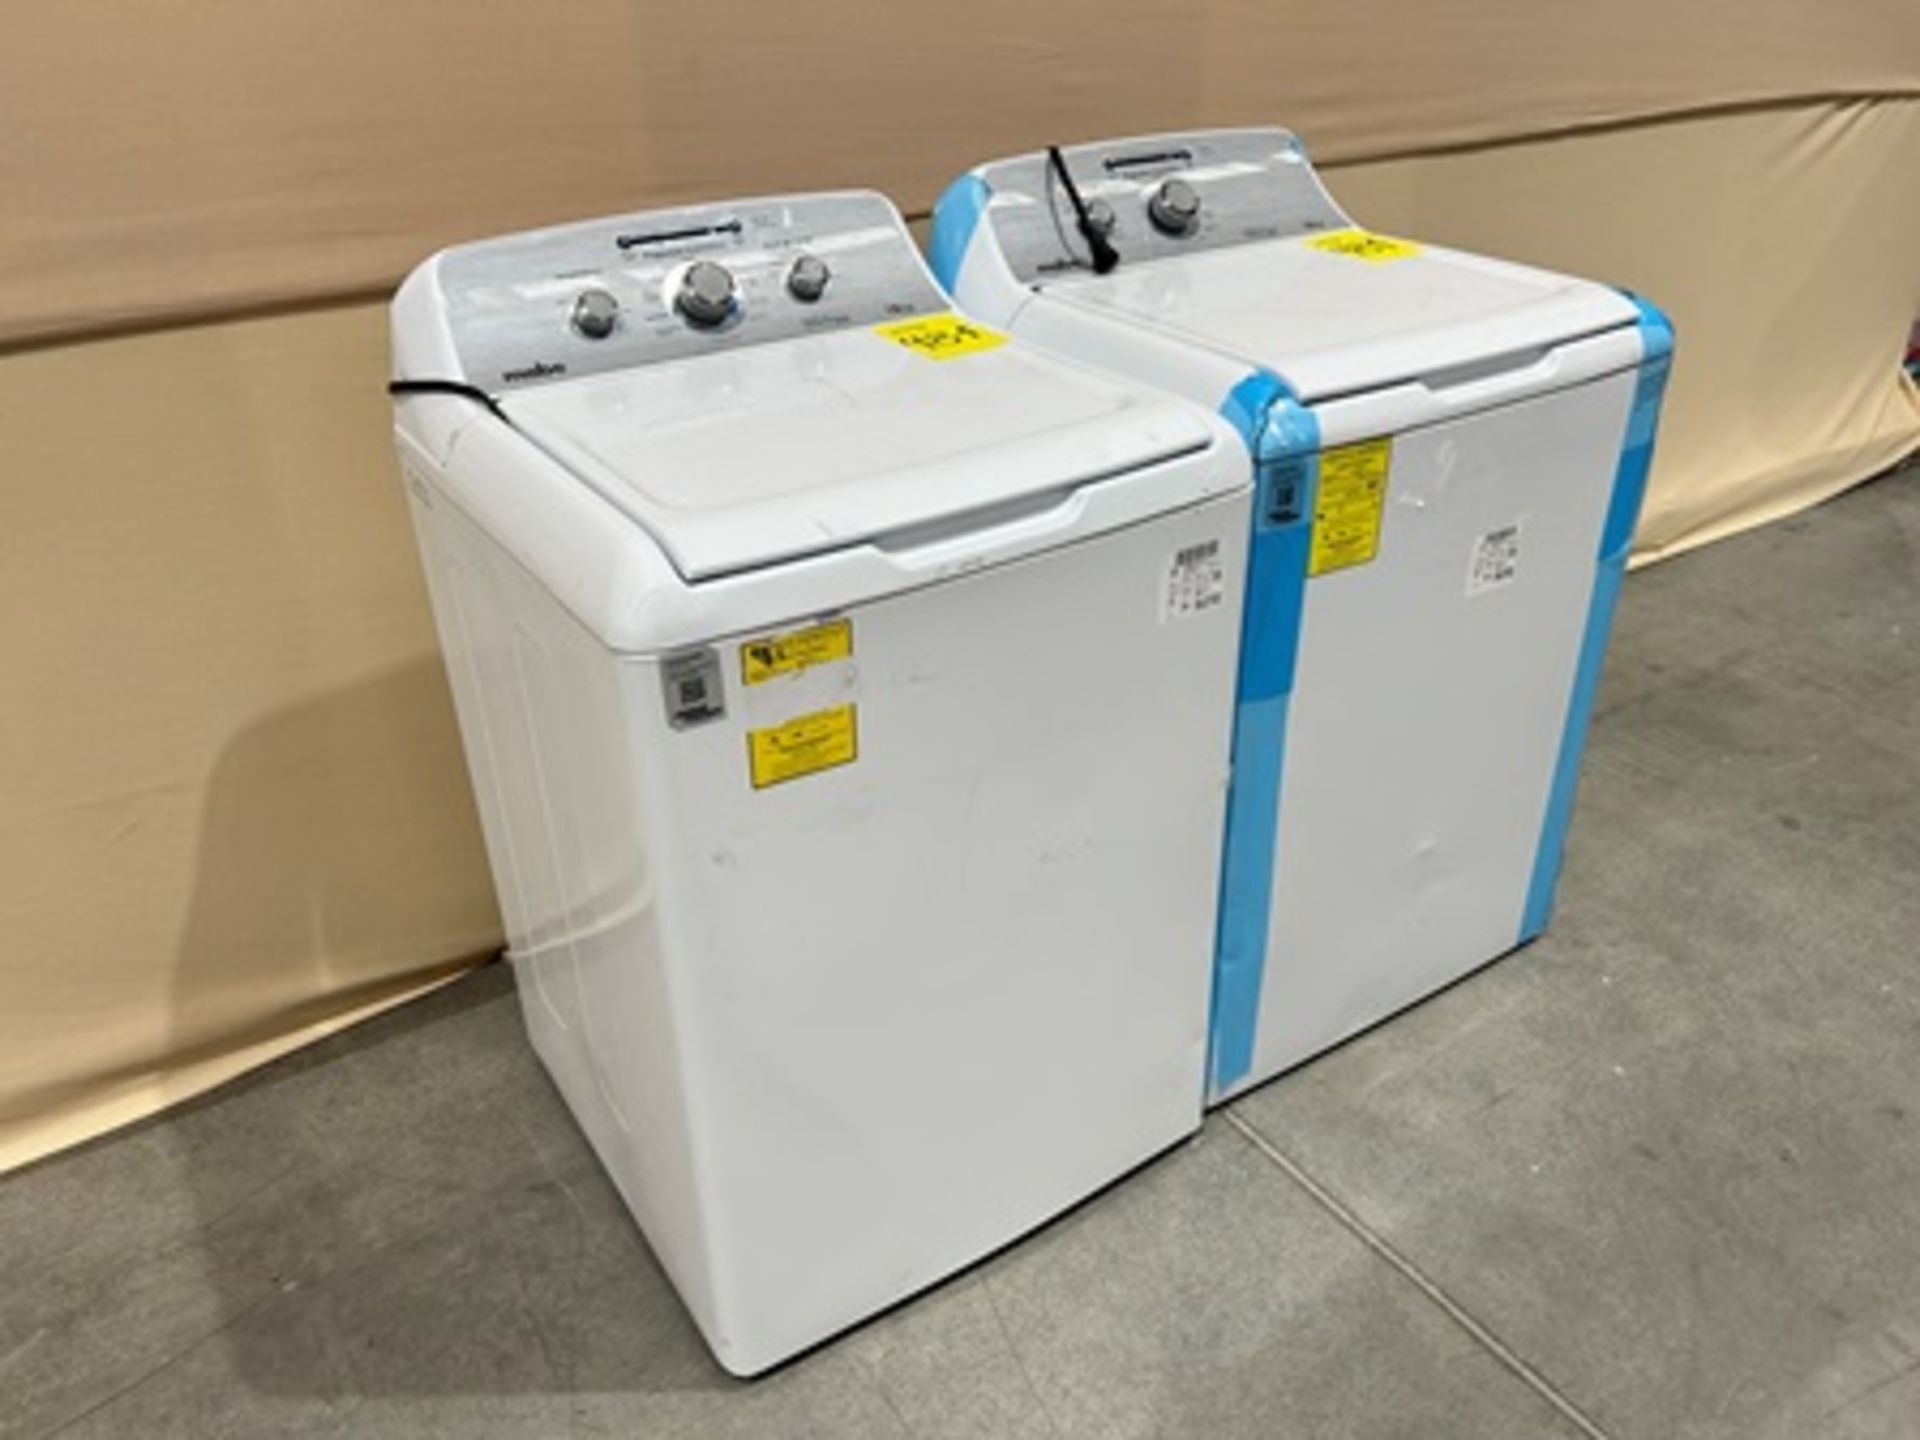 Lote de 2 lavadoras contiene: 1 Lavadora de 18 KG Marca MABE, Modelo LMA78113CBAB01, Serie S45302, - Image 2 of 10